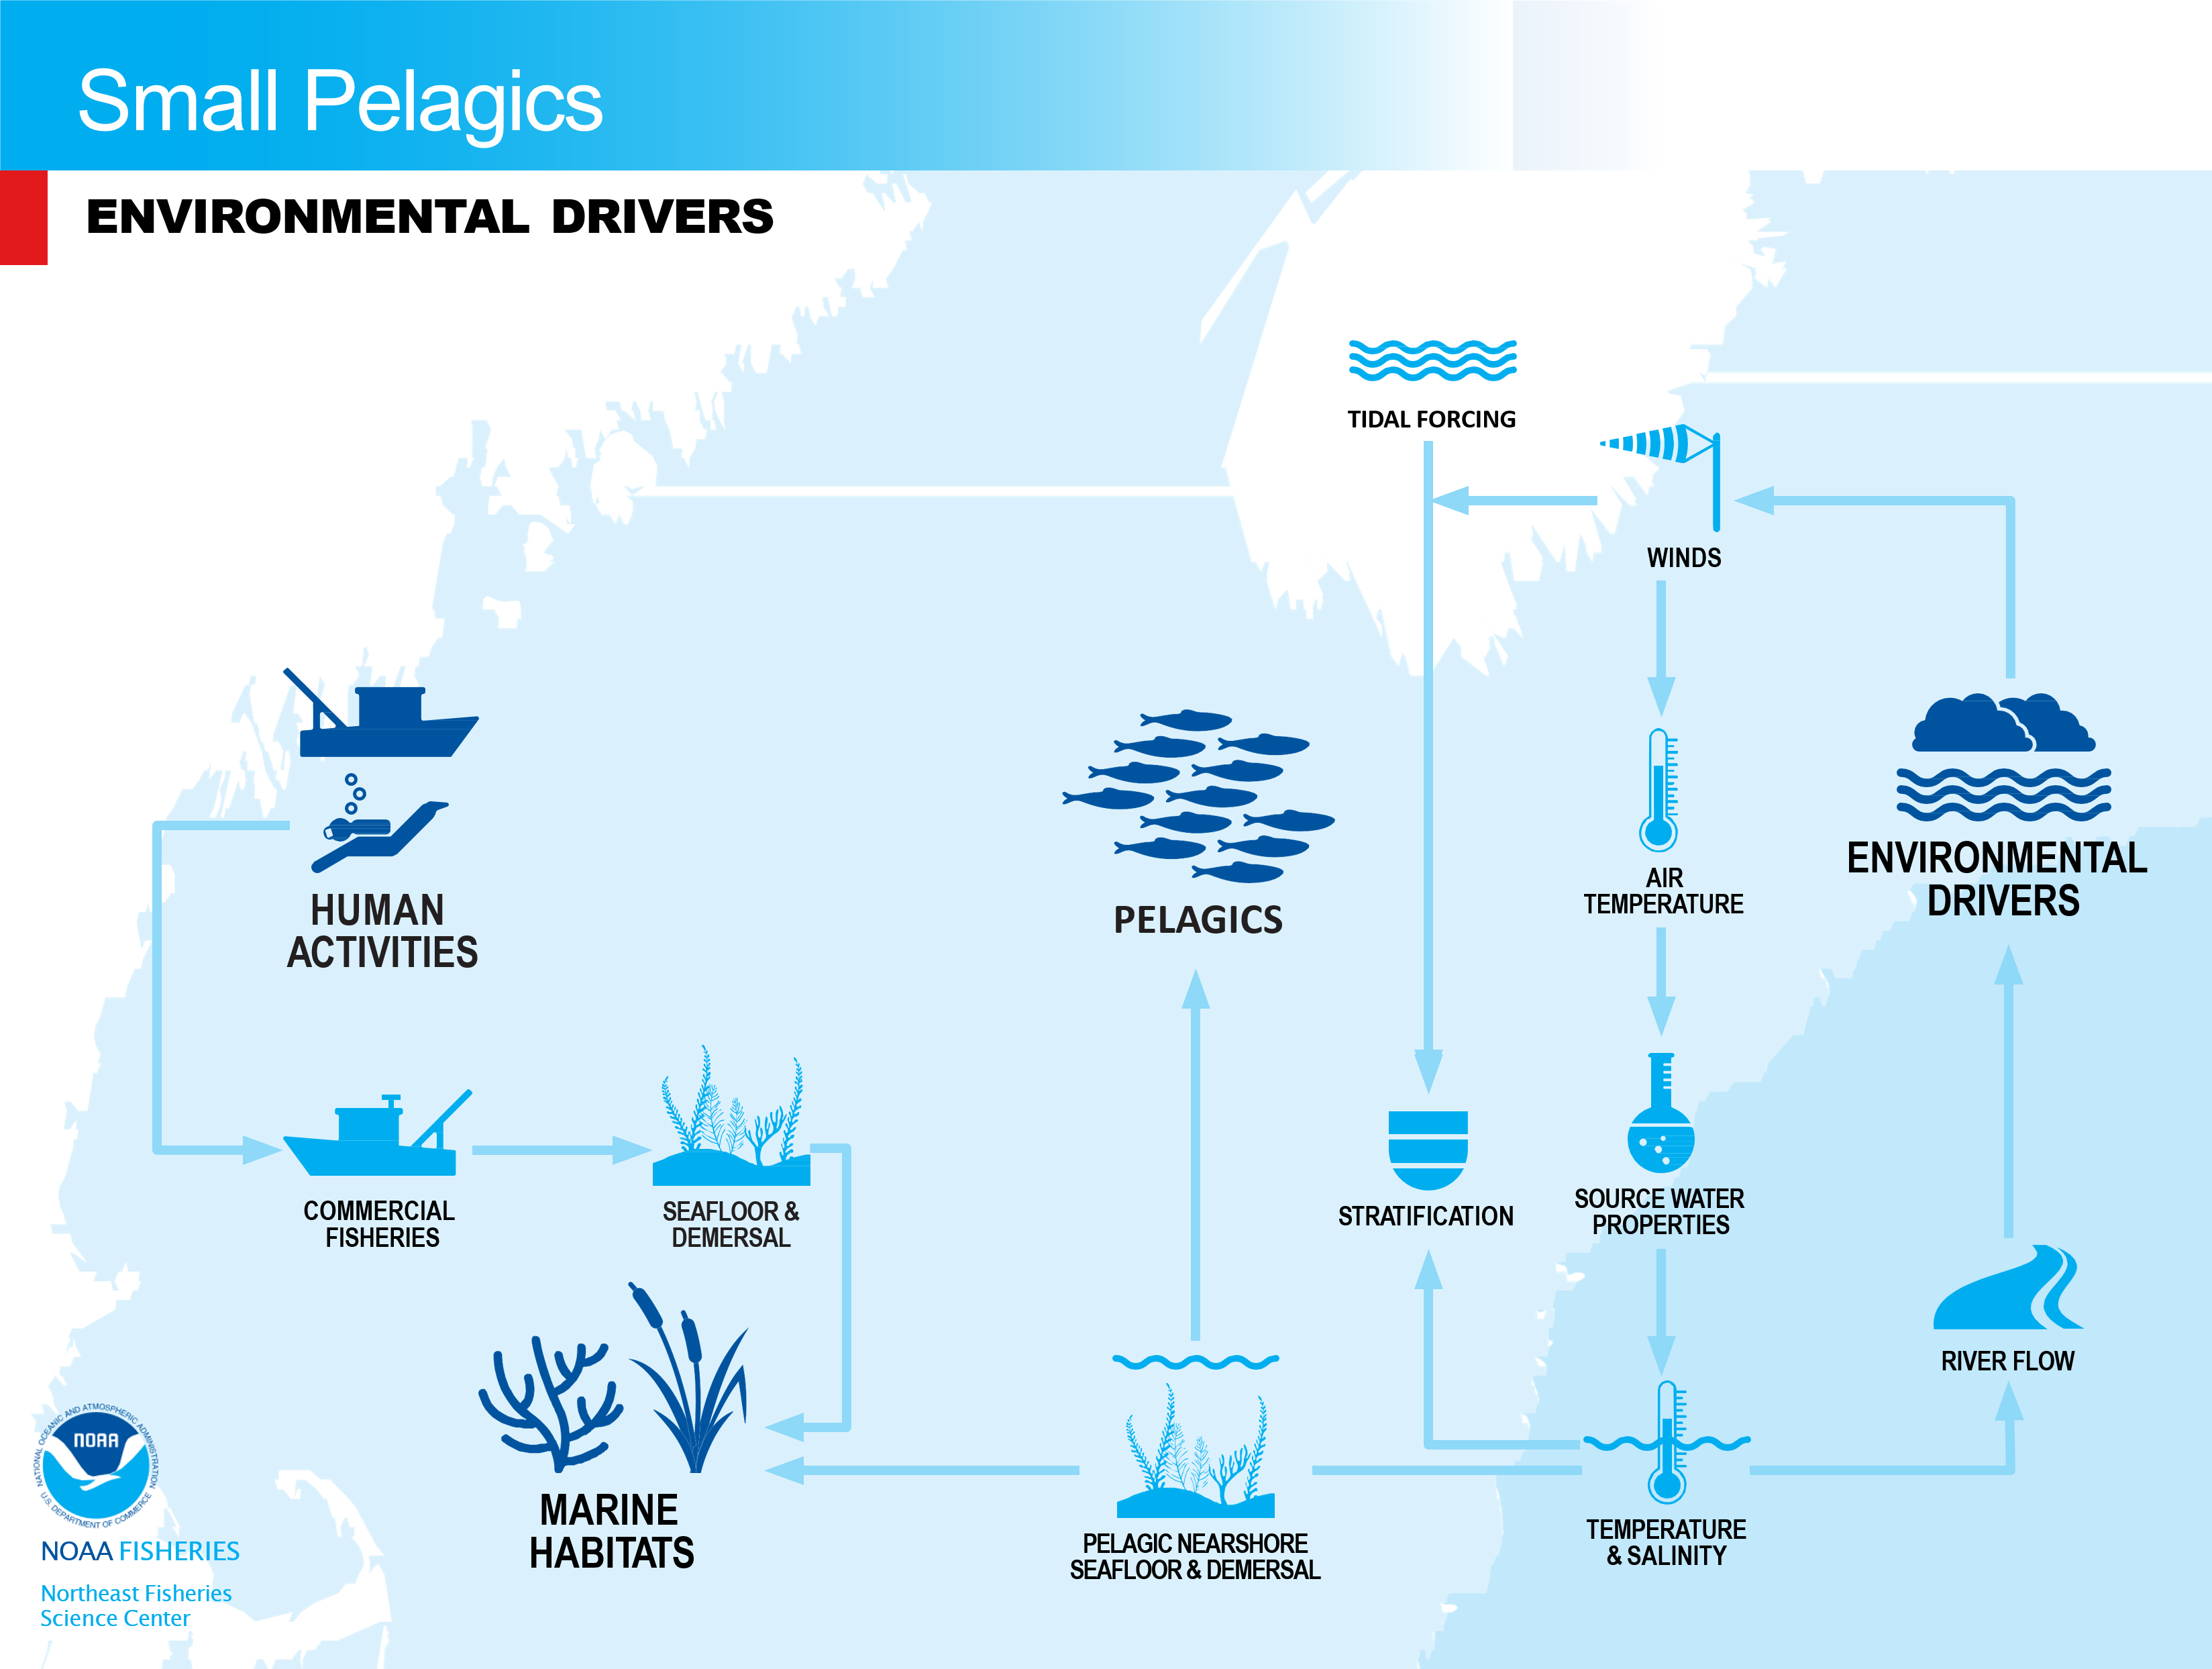 Conceptual model of environmental drivers of small pelagics